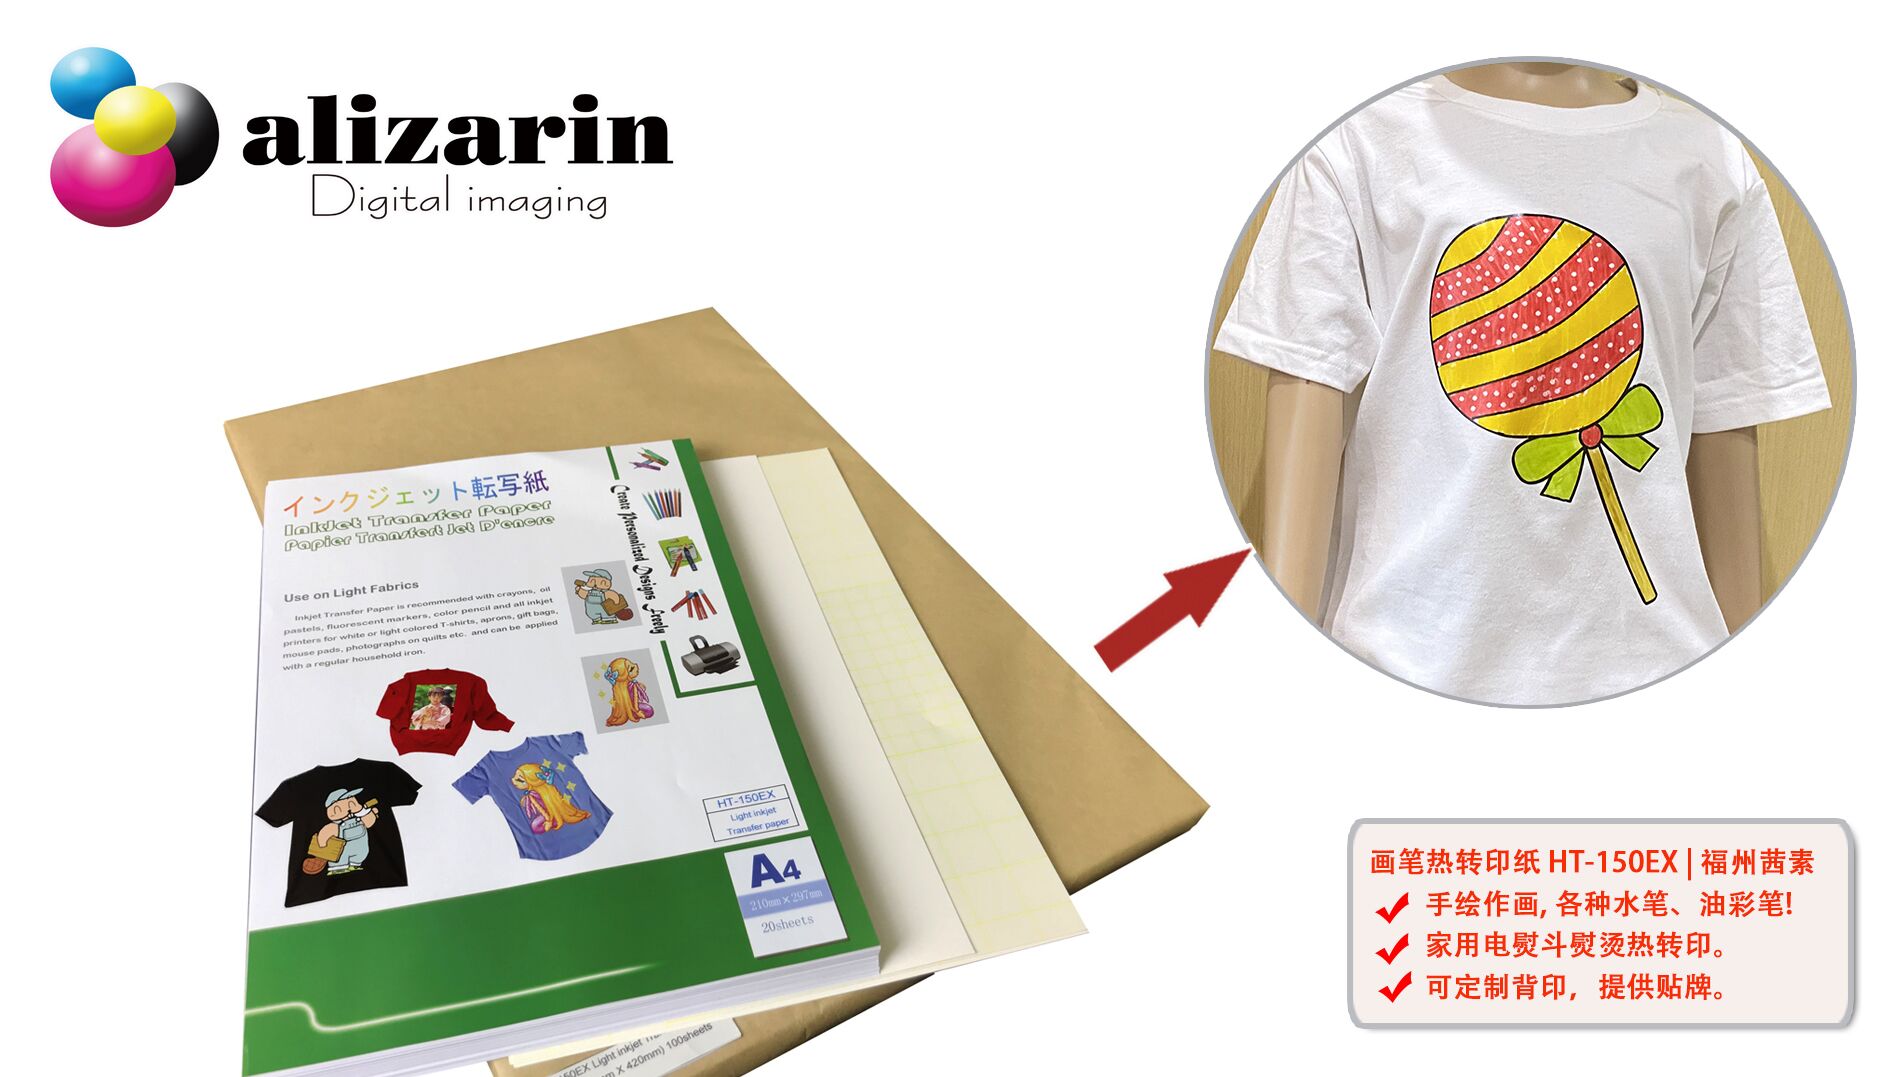 福州茜素-画笔热转印纸HT-150EX 热转印白色或浅色T恤制作流程 | alizarin.com.cn